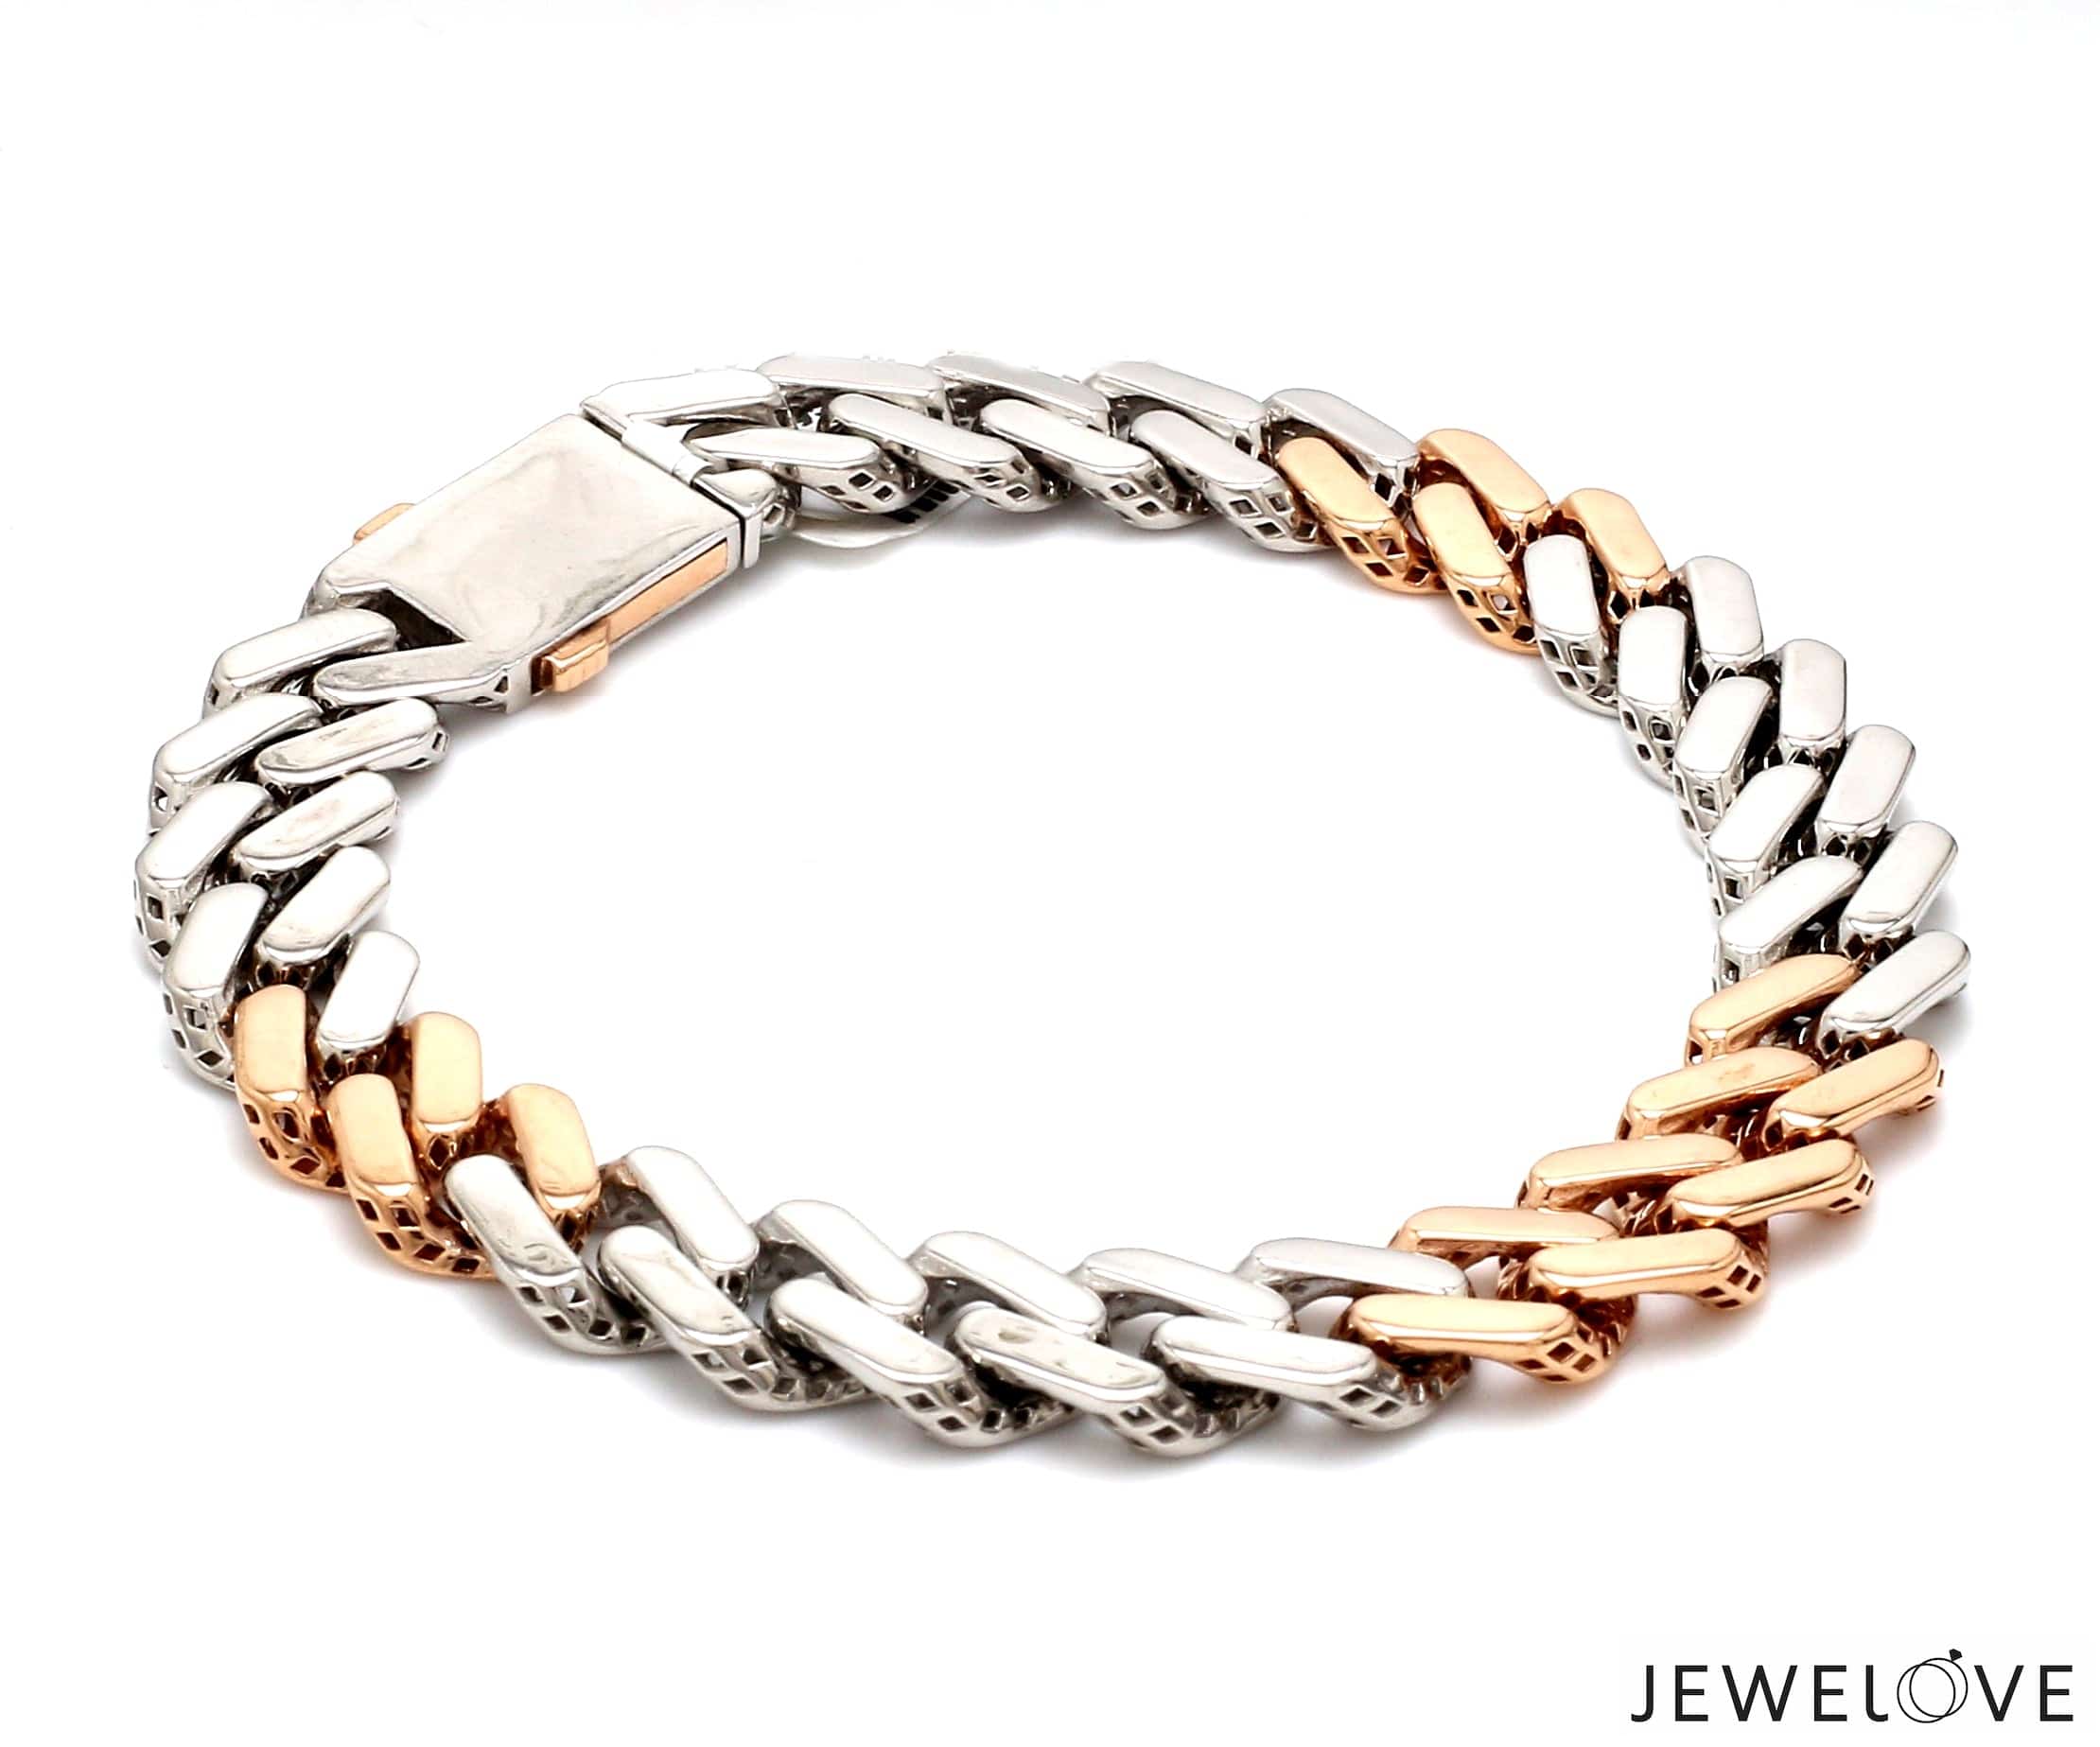 Men's Bracelet, Cuff Bracelet Men, Gold Bangle Bracelet, Bangle Bracelet  Men, Gift for Him, Made in Greece, by Christina Christi Jewels. - Etsy |  Mens bracelet gold jewelry, Mens gold bracelets, Man